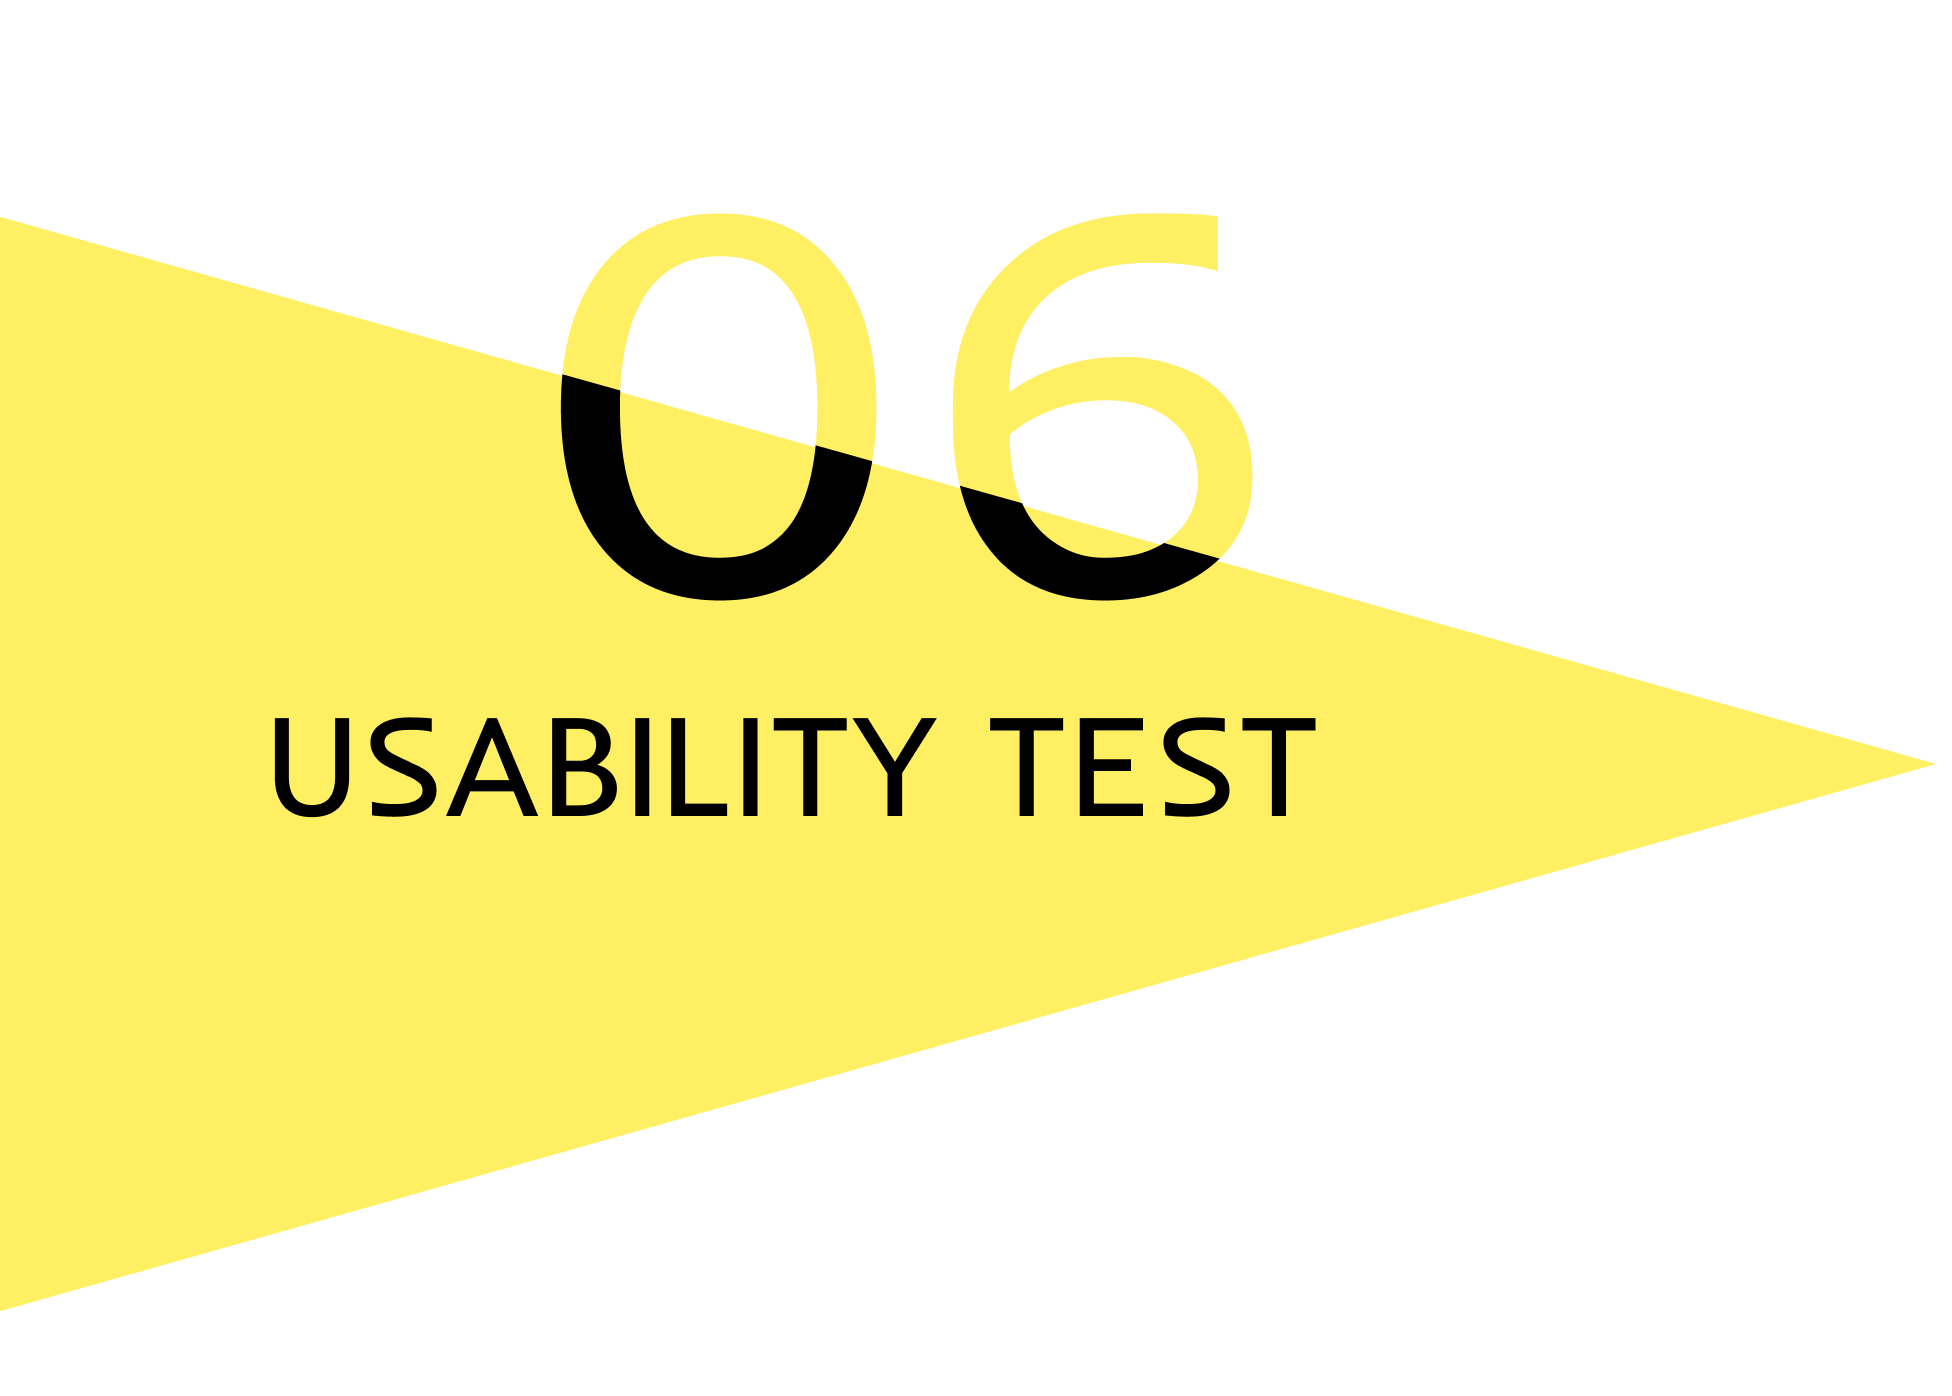 6.-Usability-Test-header